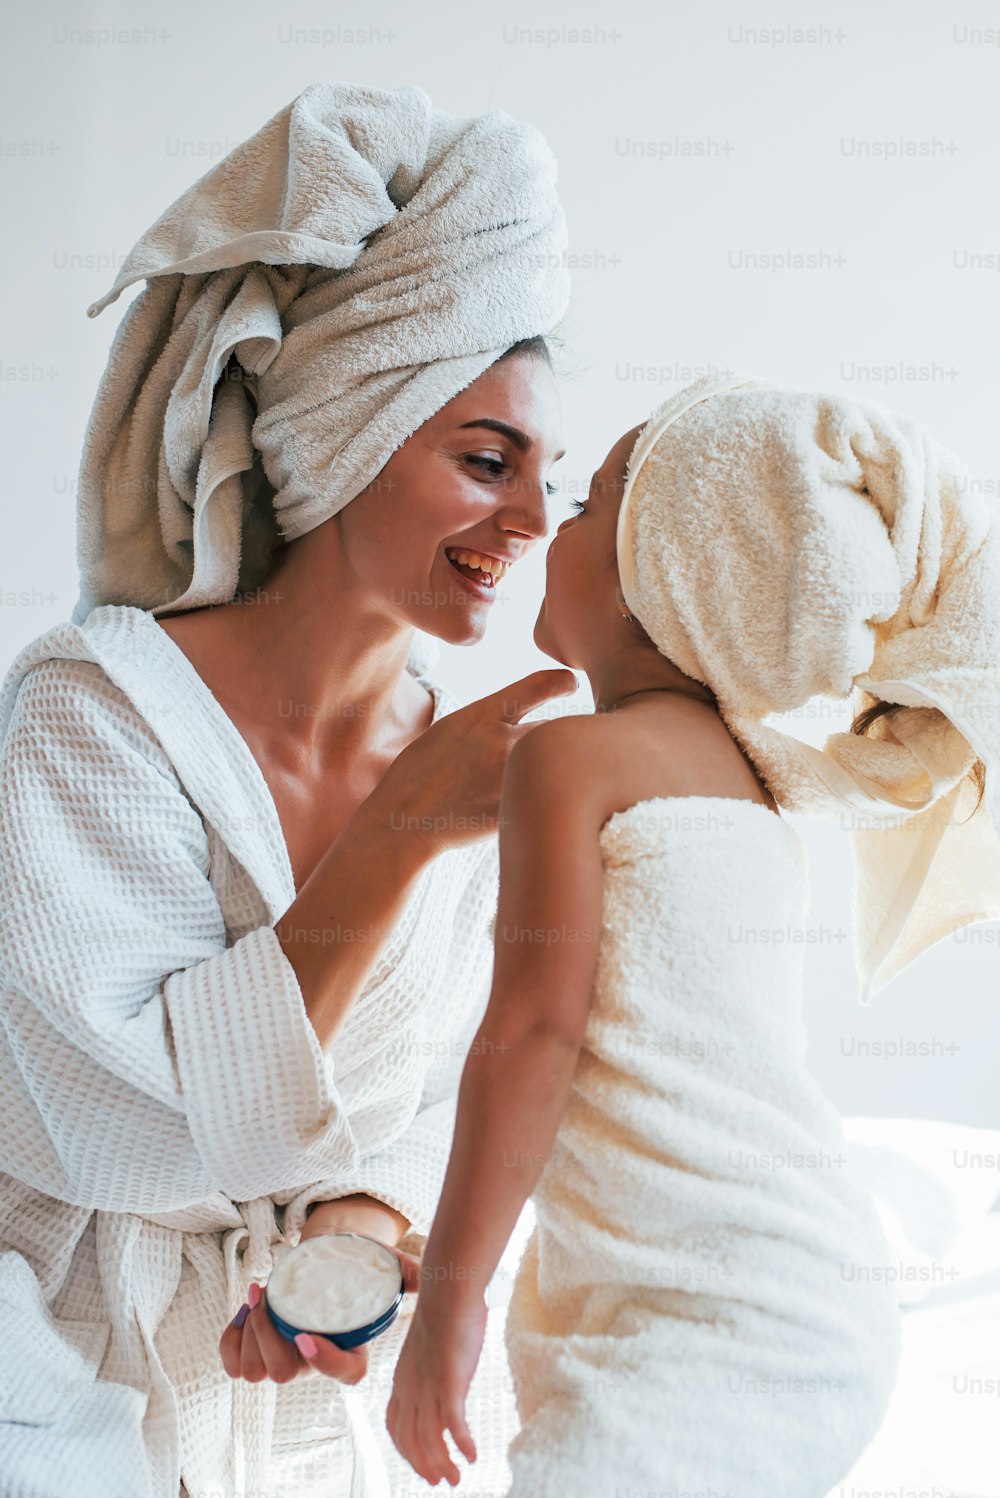 Usare la crema per schiarire la pelle. La giovane madre con la figlia ha una giornata di bellezza al chiuso in una stanza bianca.